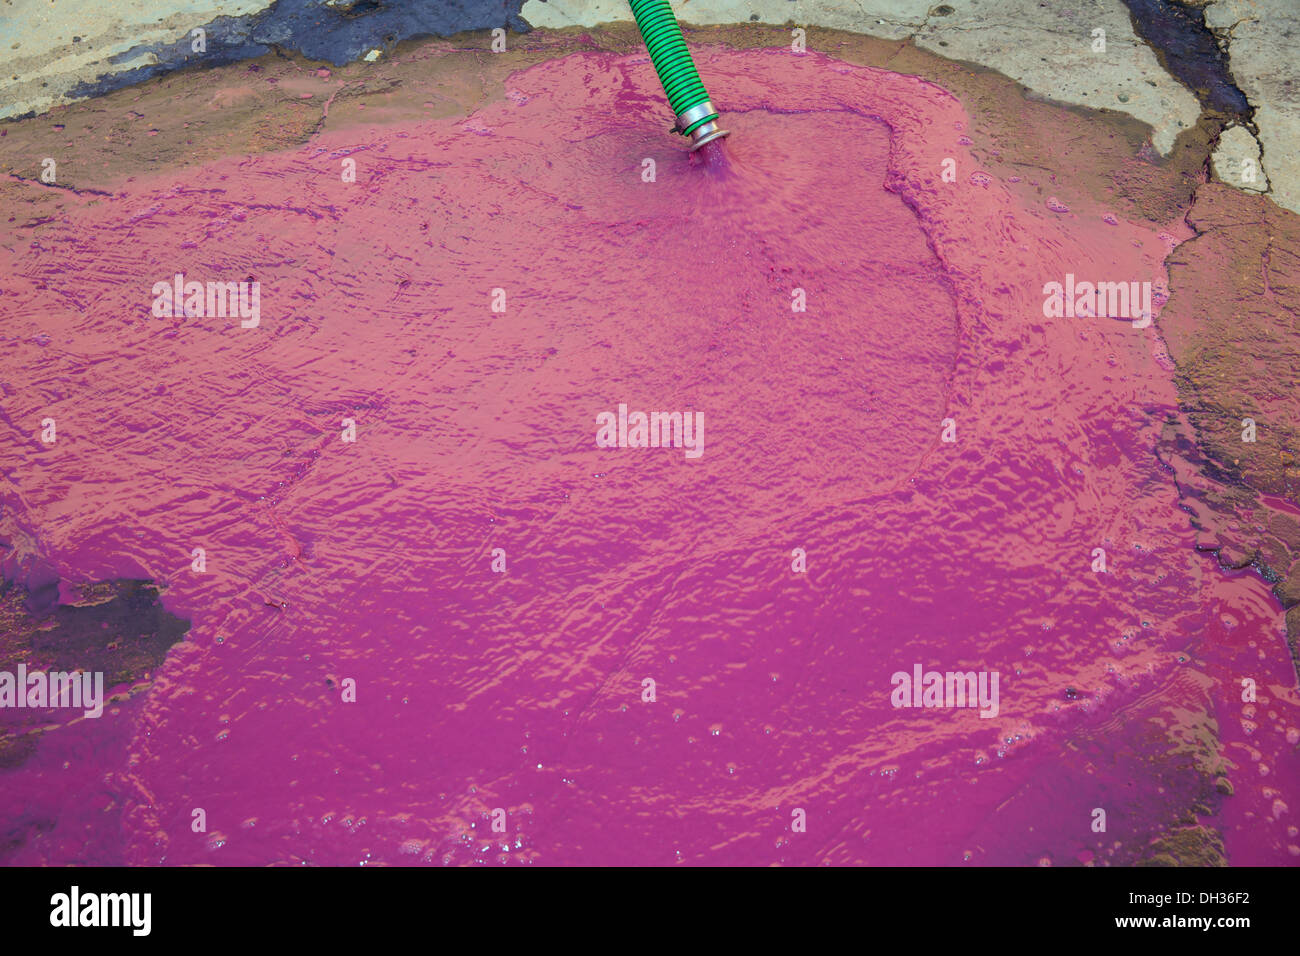 La vinasse vin riche en acide tartrique couleur rose magenta dans le nettoyage de la racaille du barils Banque D'Images